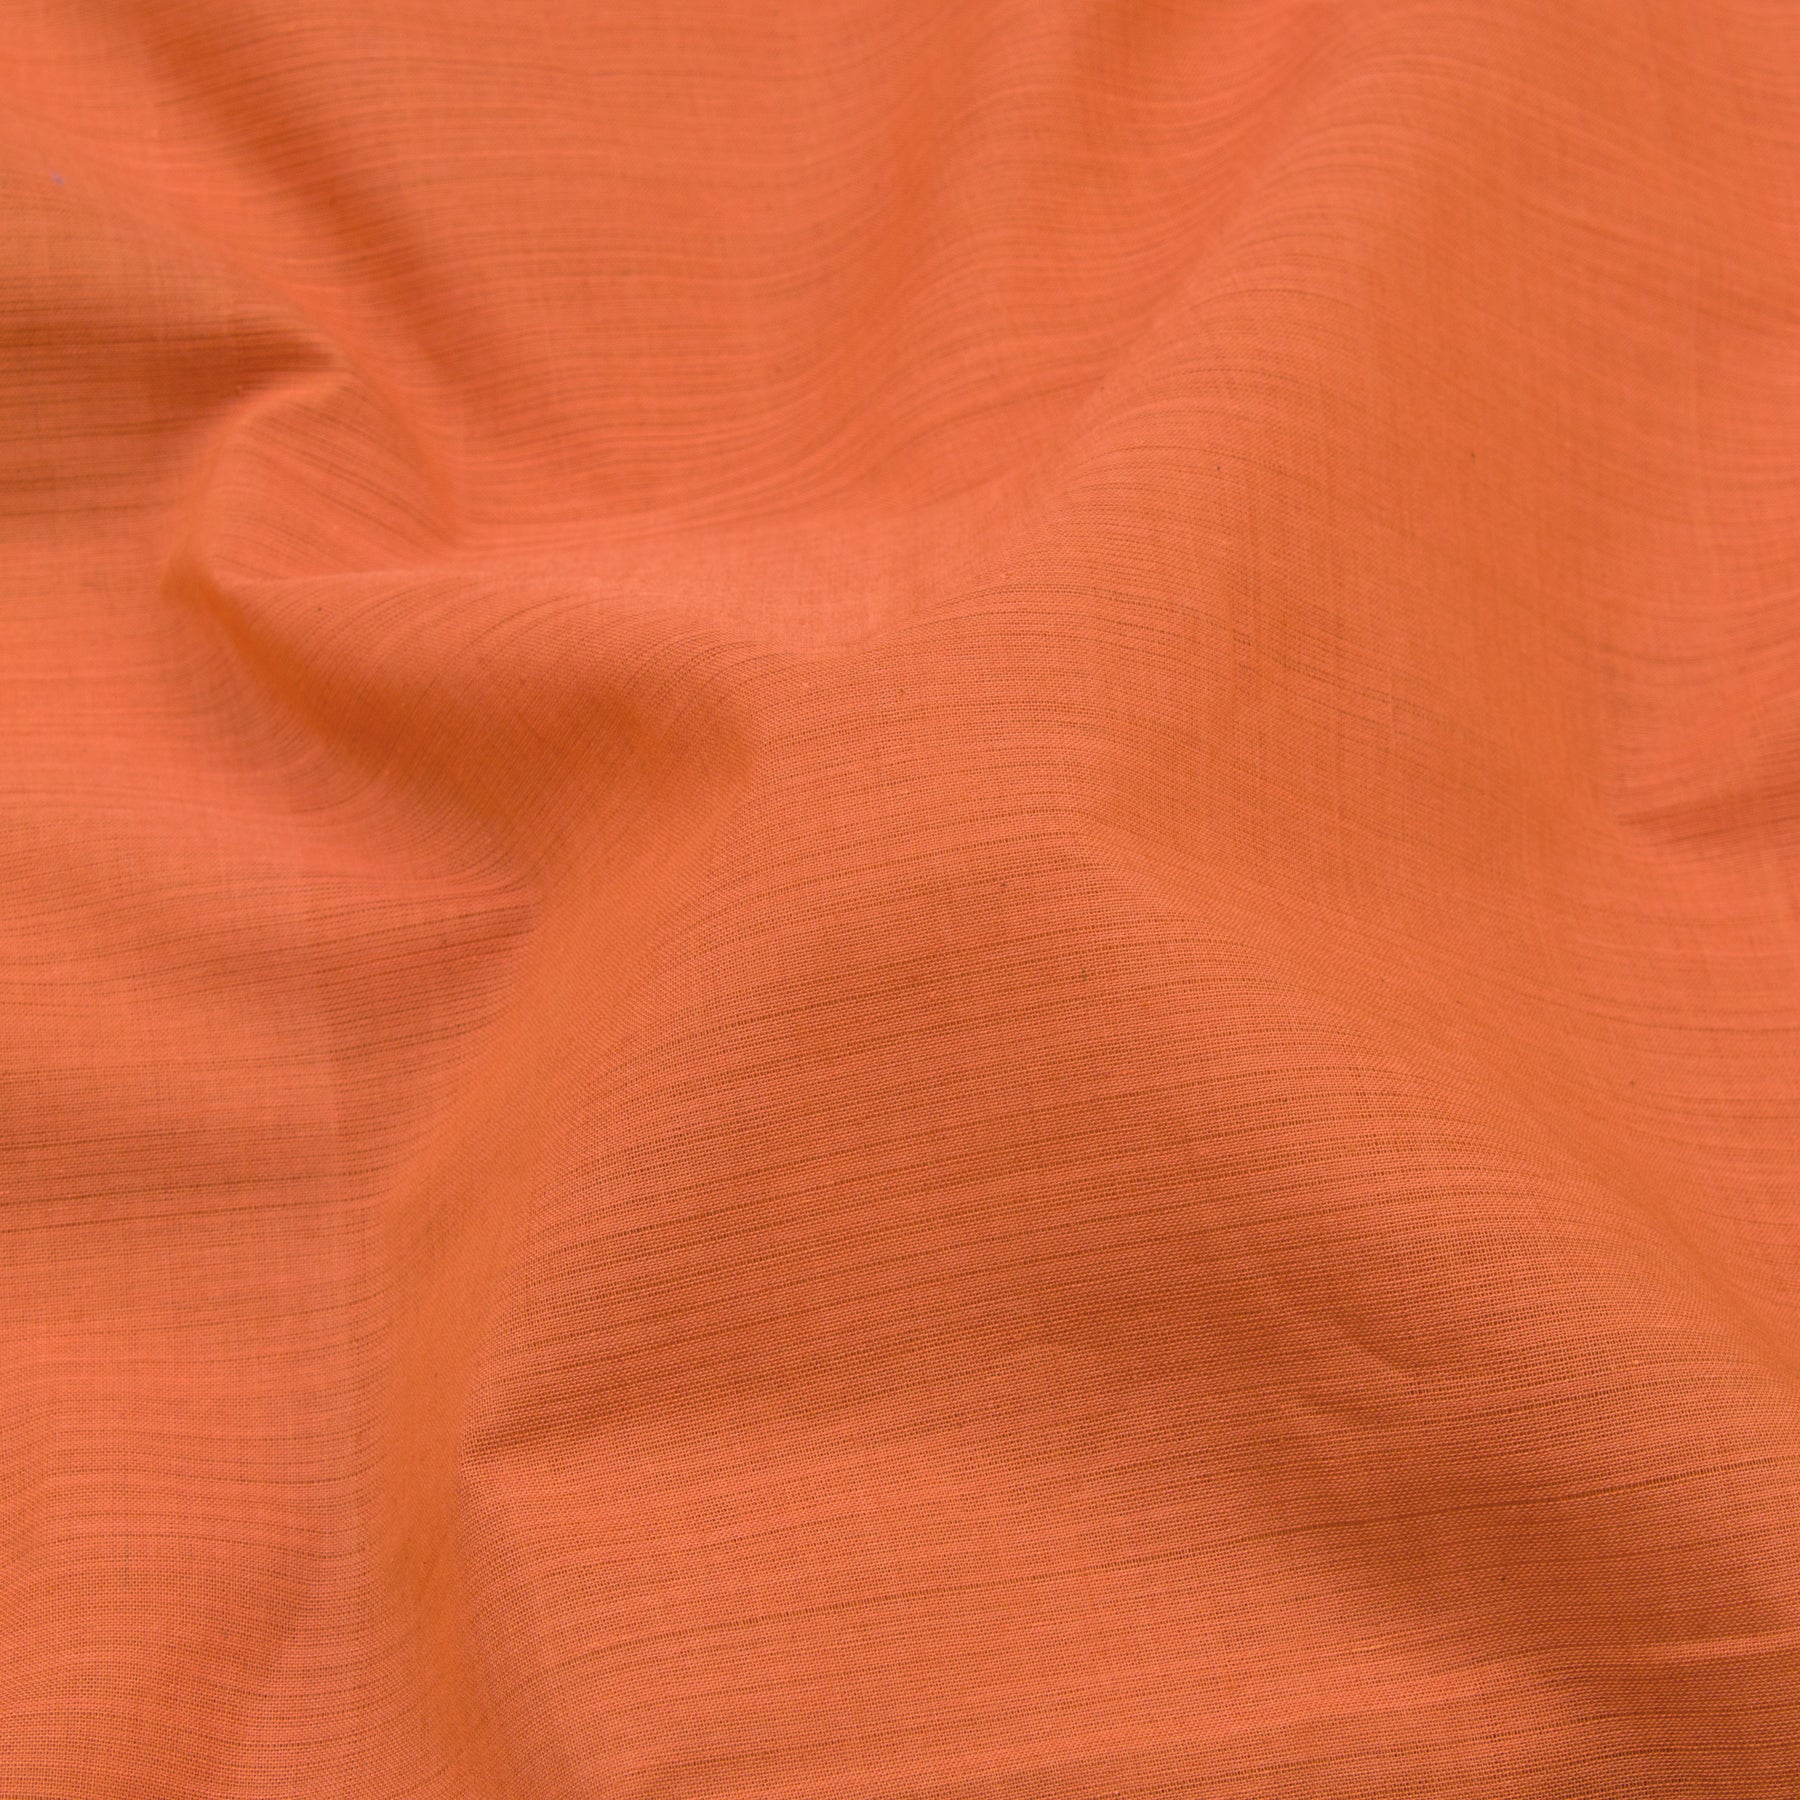 Kanakavalli Mangalgiri Cotton Sari 22-261-HS003-02880 - Fabric View